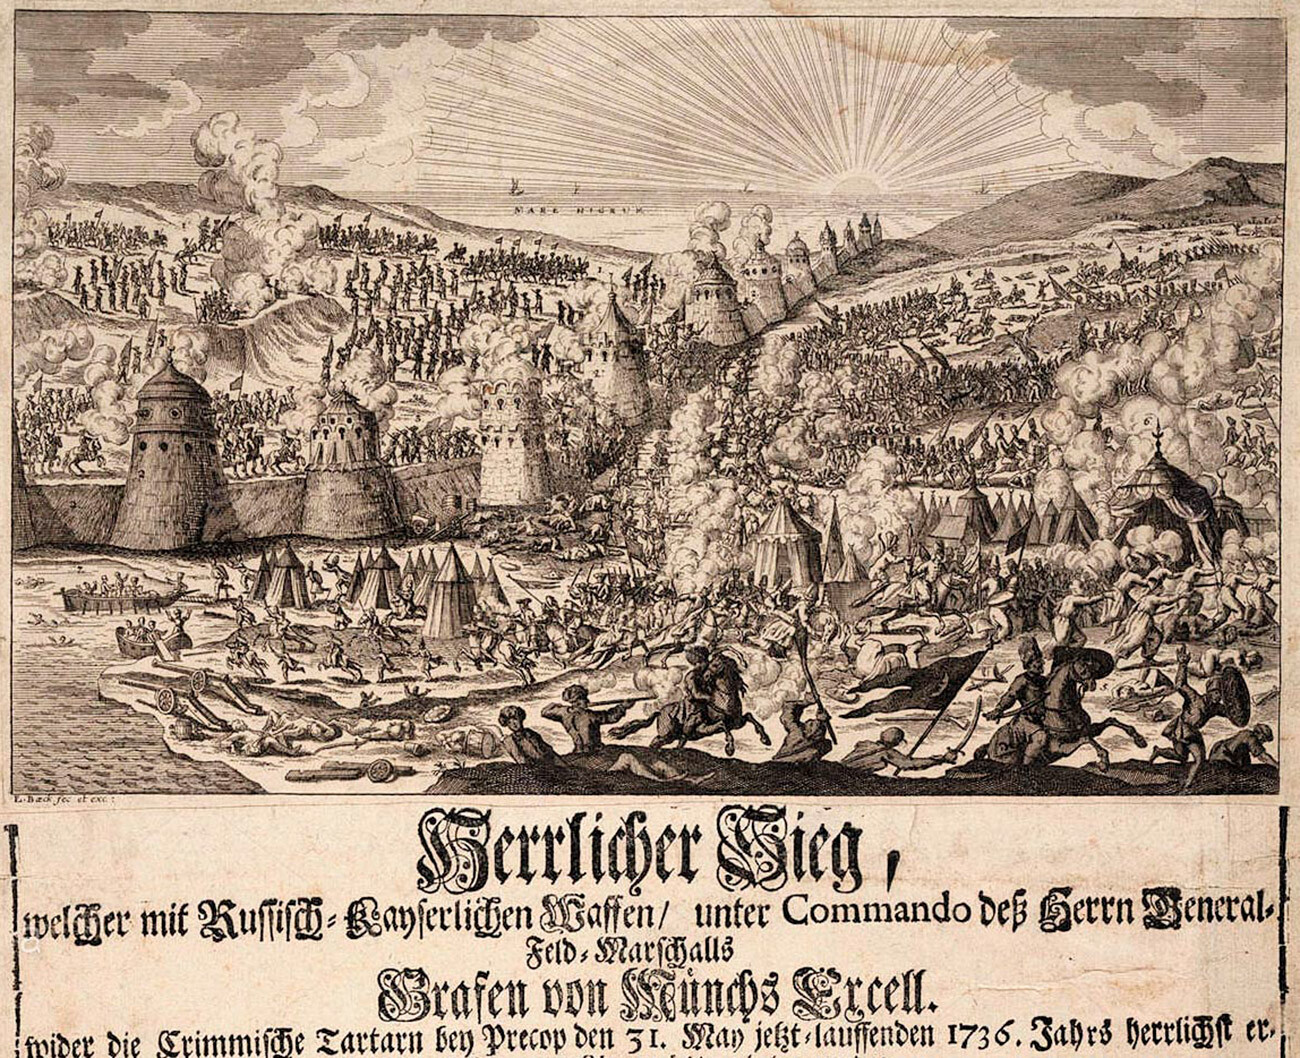 La vittoria russa in Crimea nel 1736
